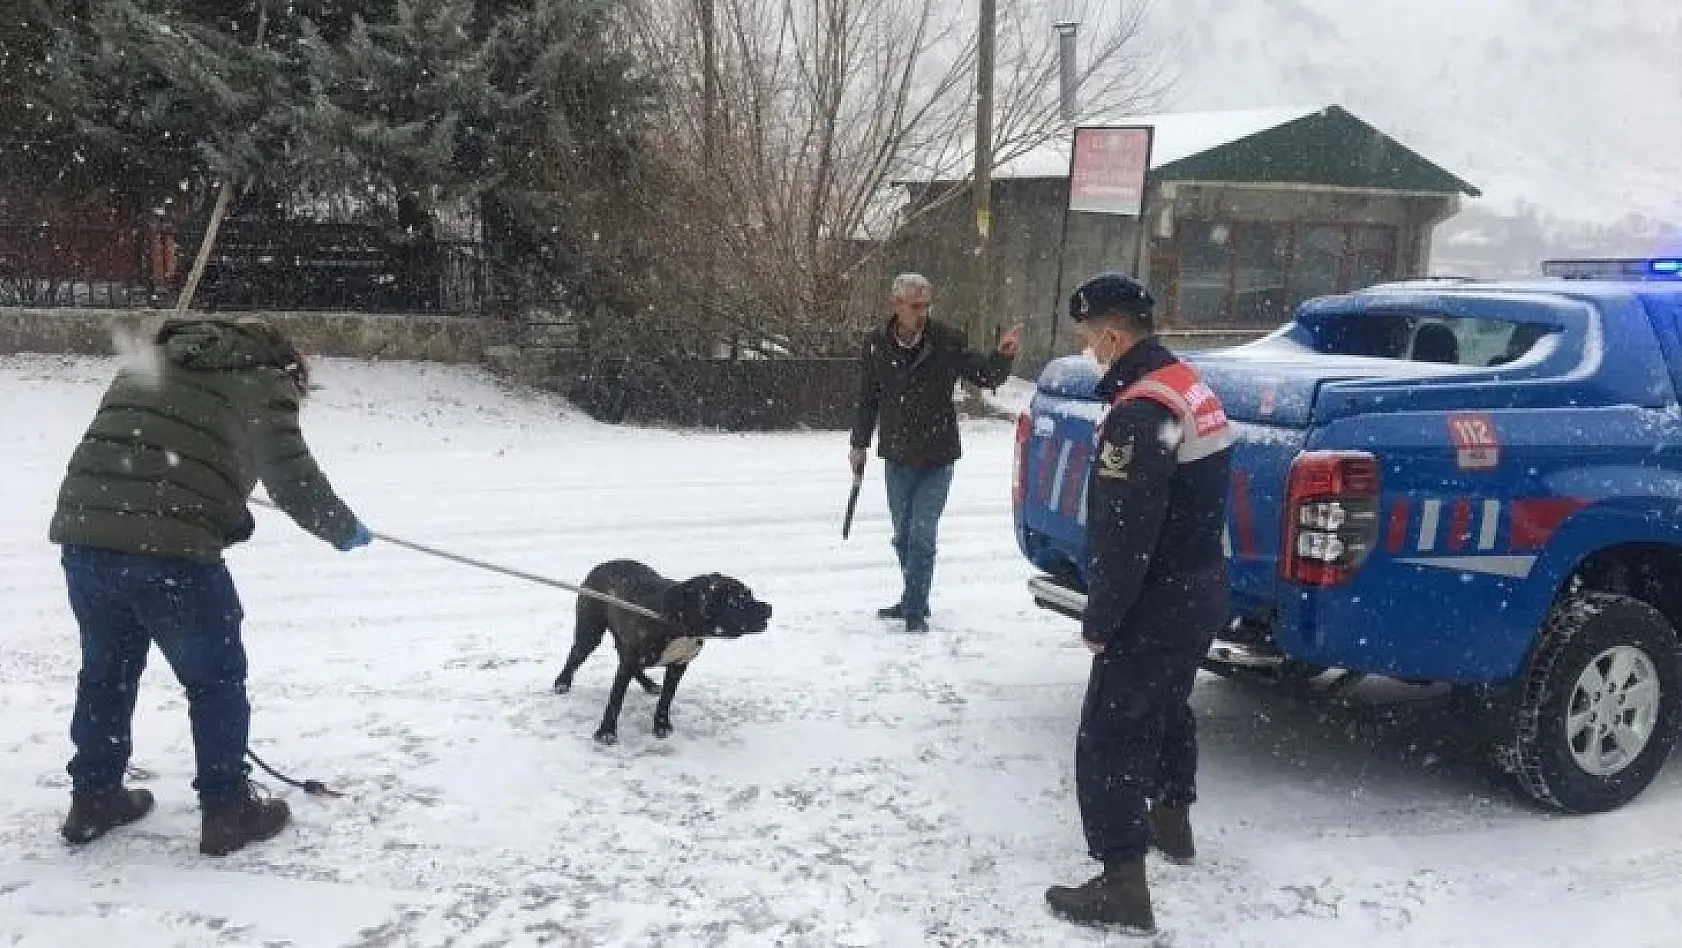 Bingöl'de başıboş gezen Pitbull cinsi köpek, yakalanarak barınağa götürüldü